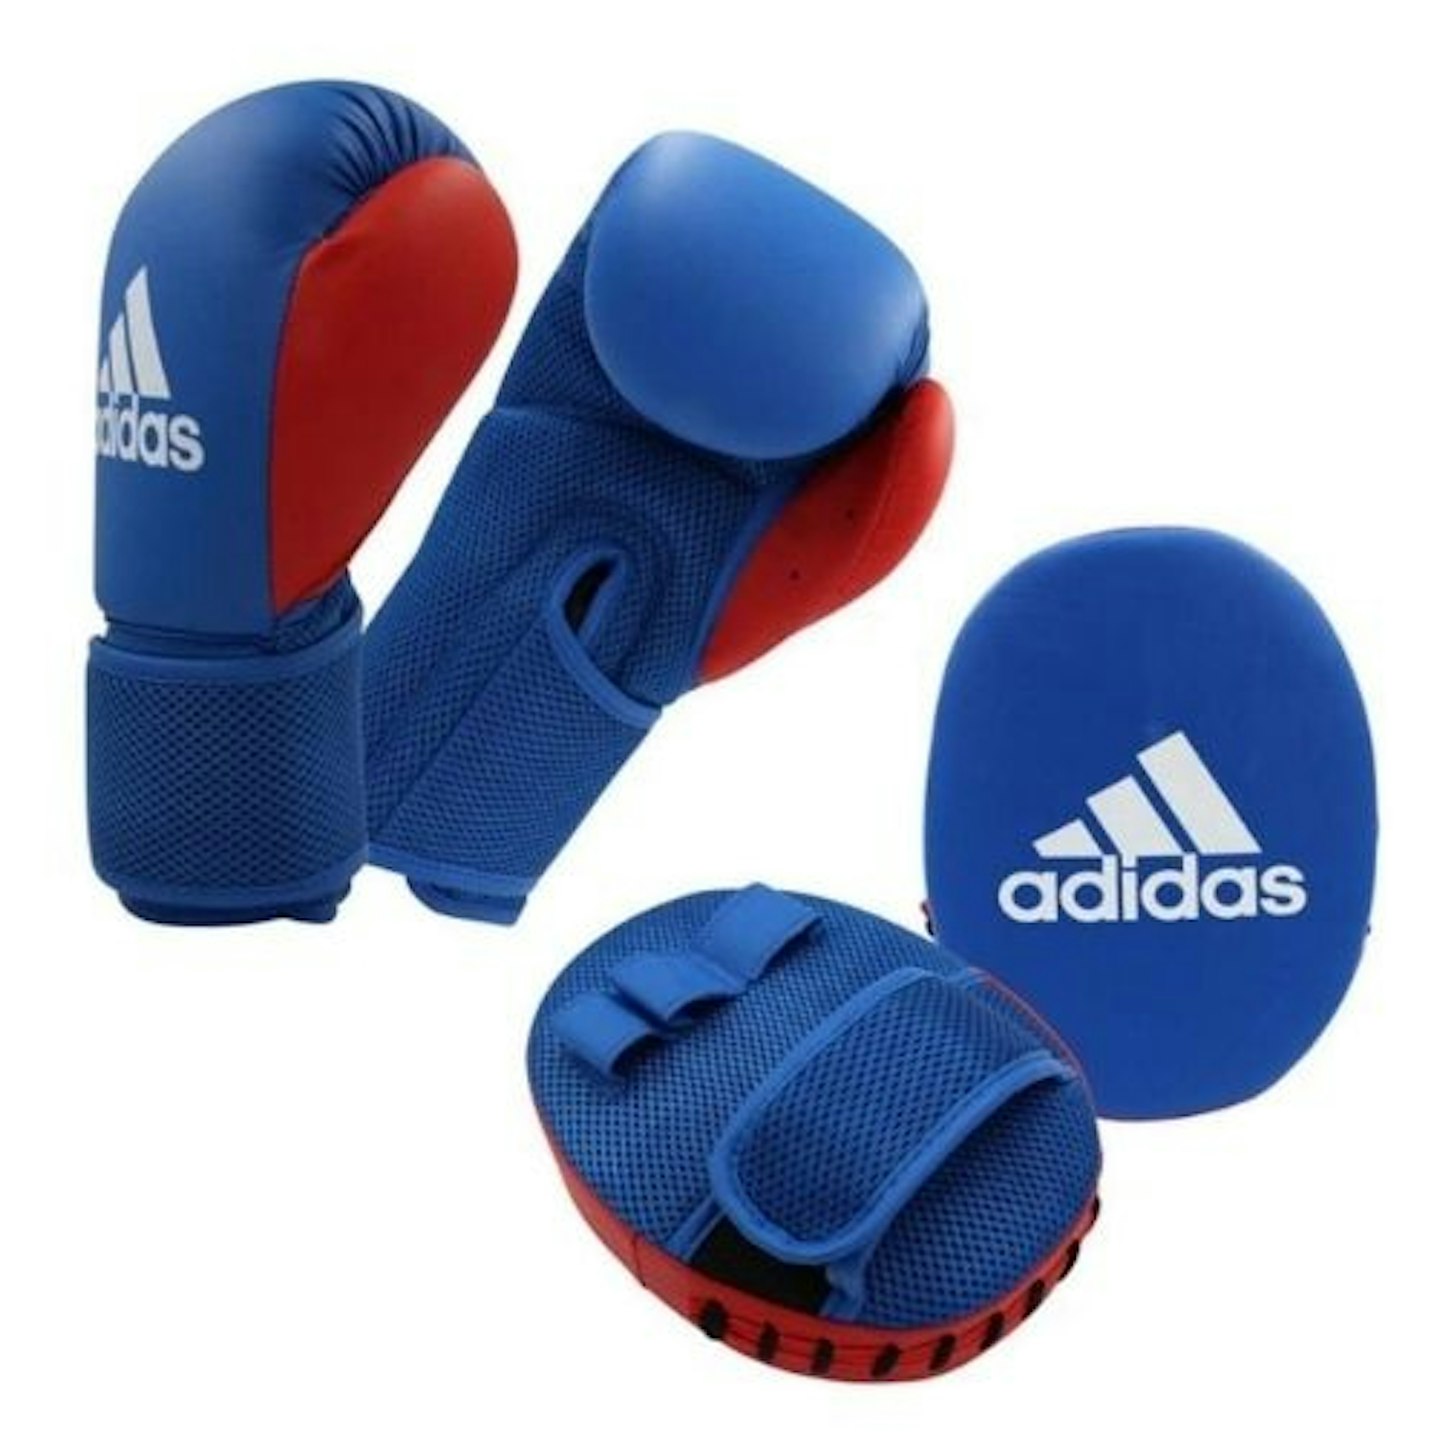 adidas Unisex Youth Kids Boxing Kit